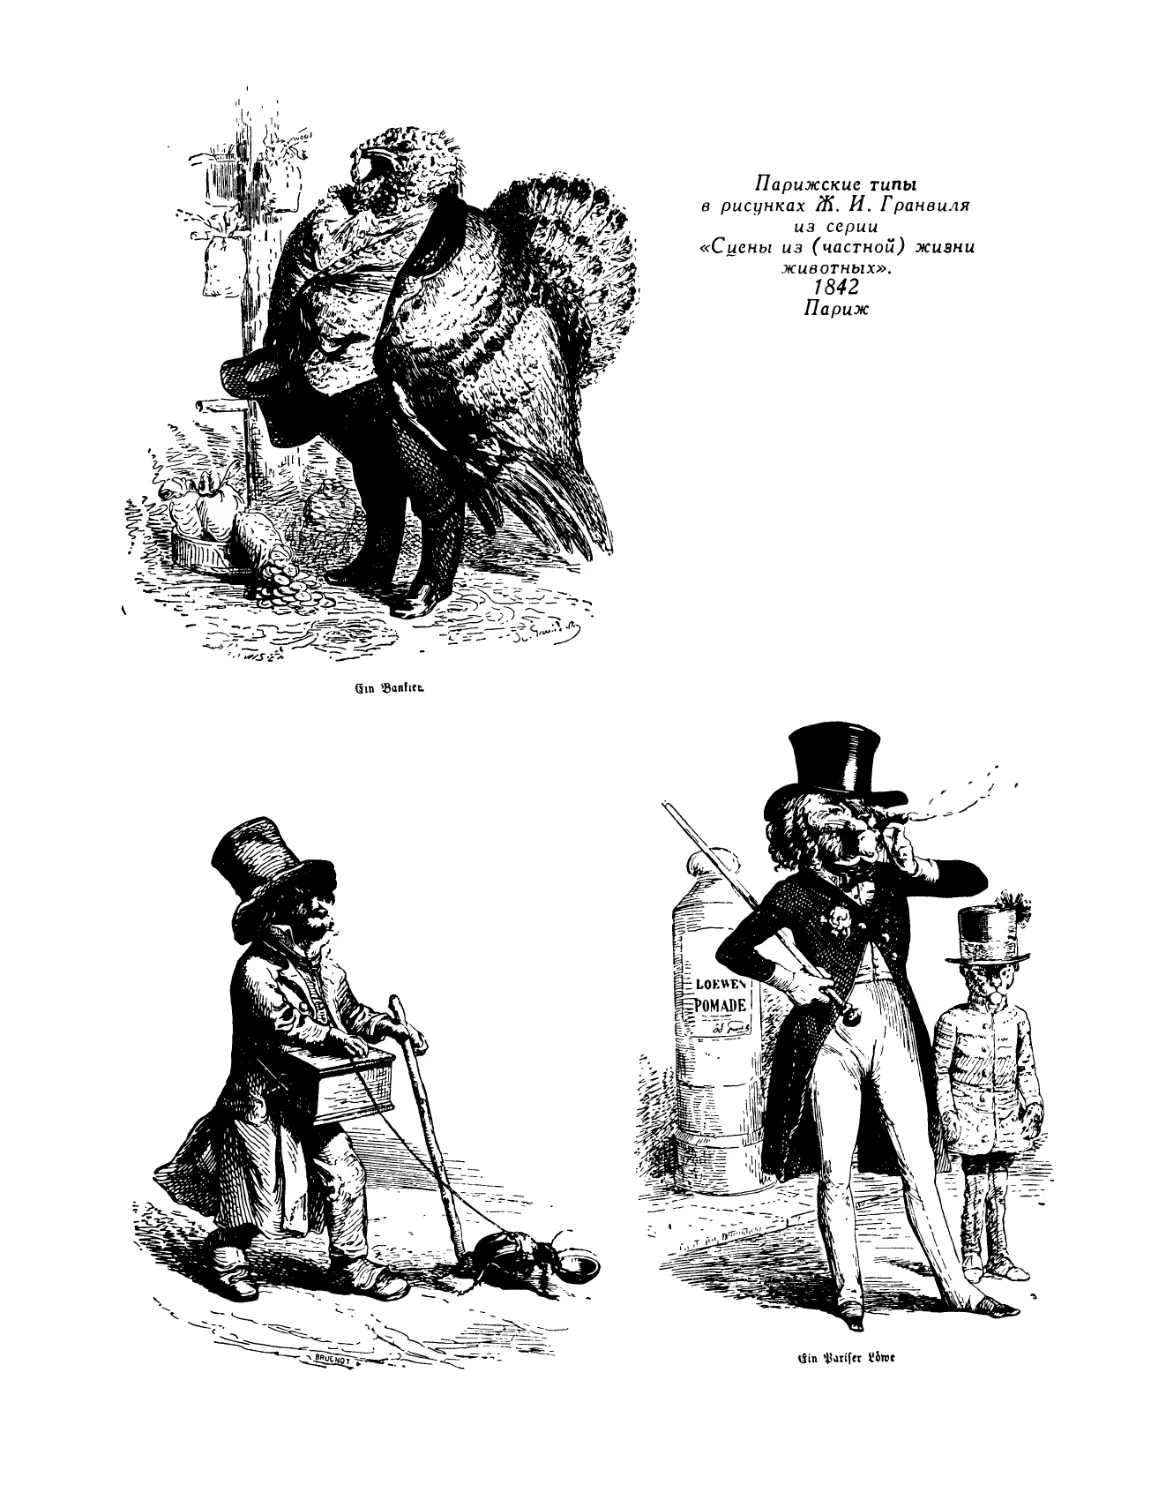 А. И. Герцен. Литография Л. Ноэля. 1847; А. И. Герцен. «После грозы». Автограф